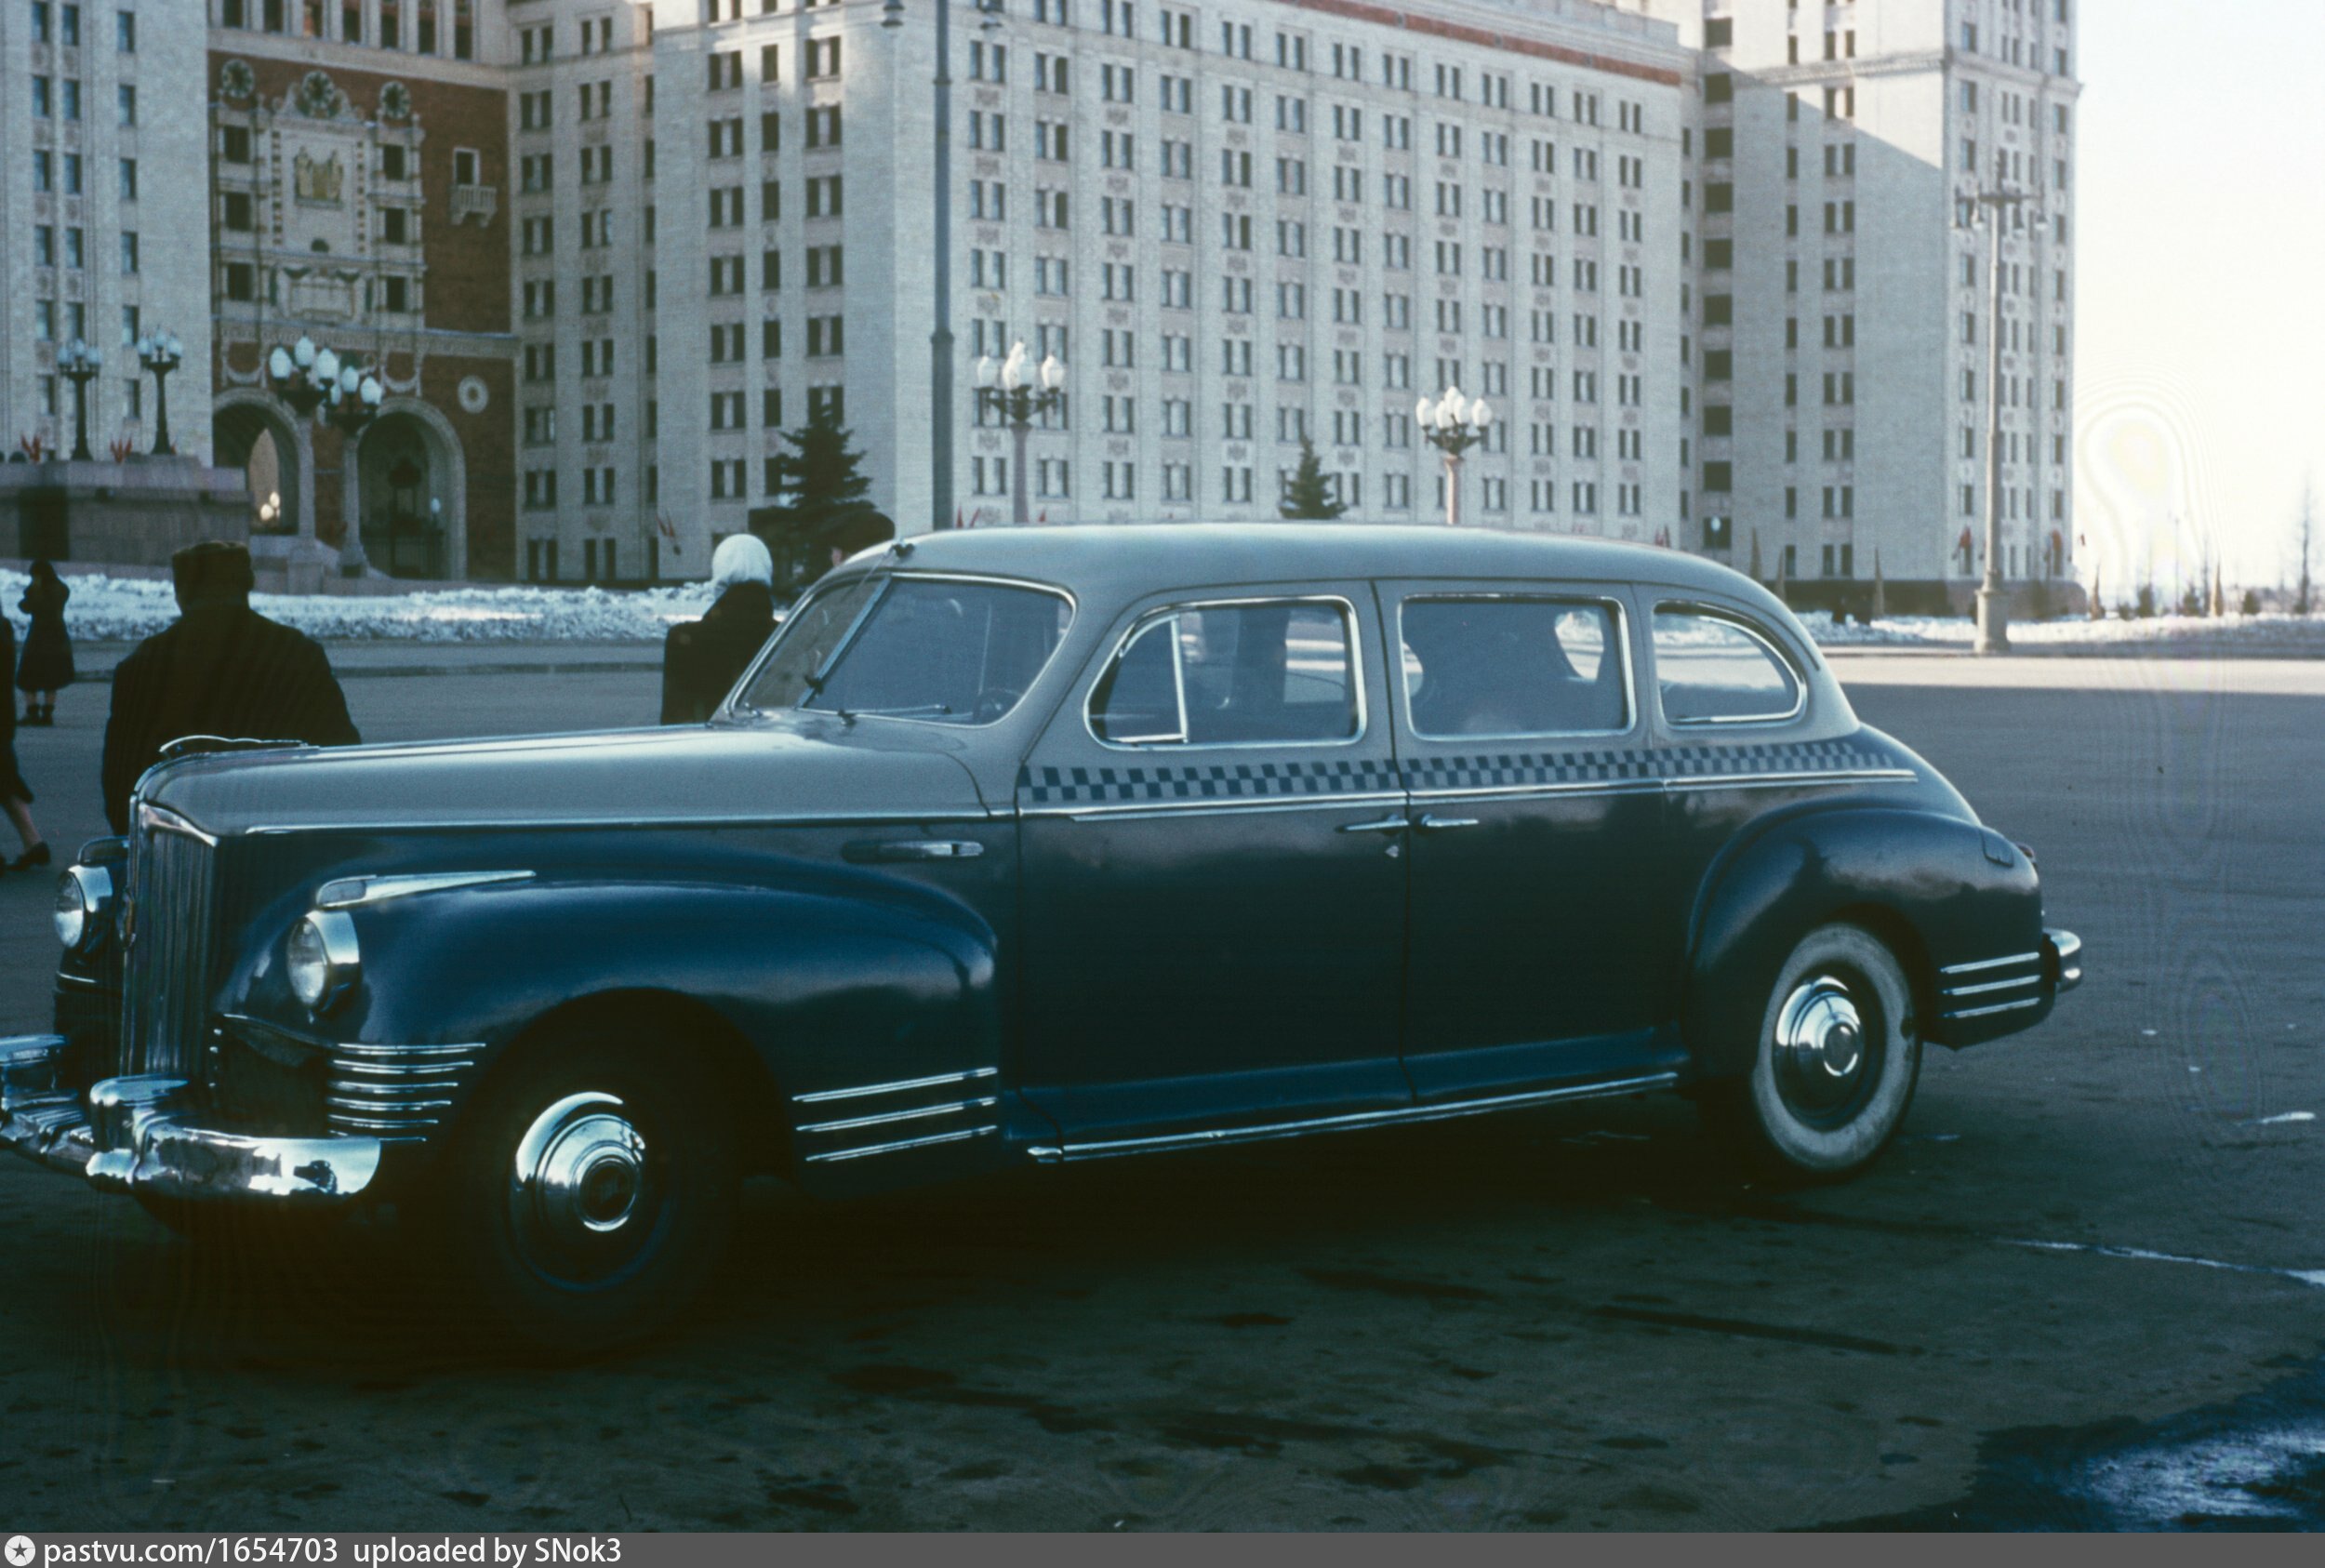 Март 1954 г. ЗИС 110. ЗИС 110 такси. ЗИС-110в кабриолет. ЗИС-110 легковой автомобиль.